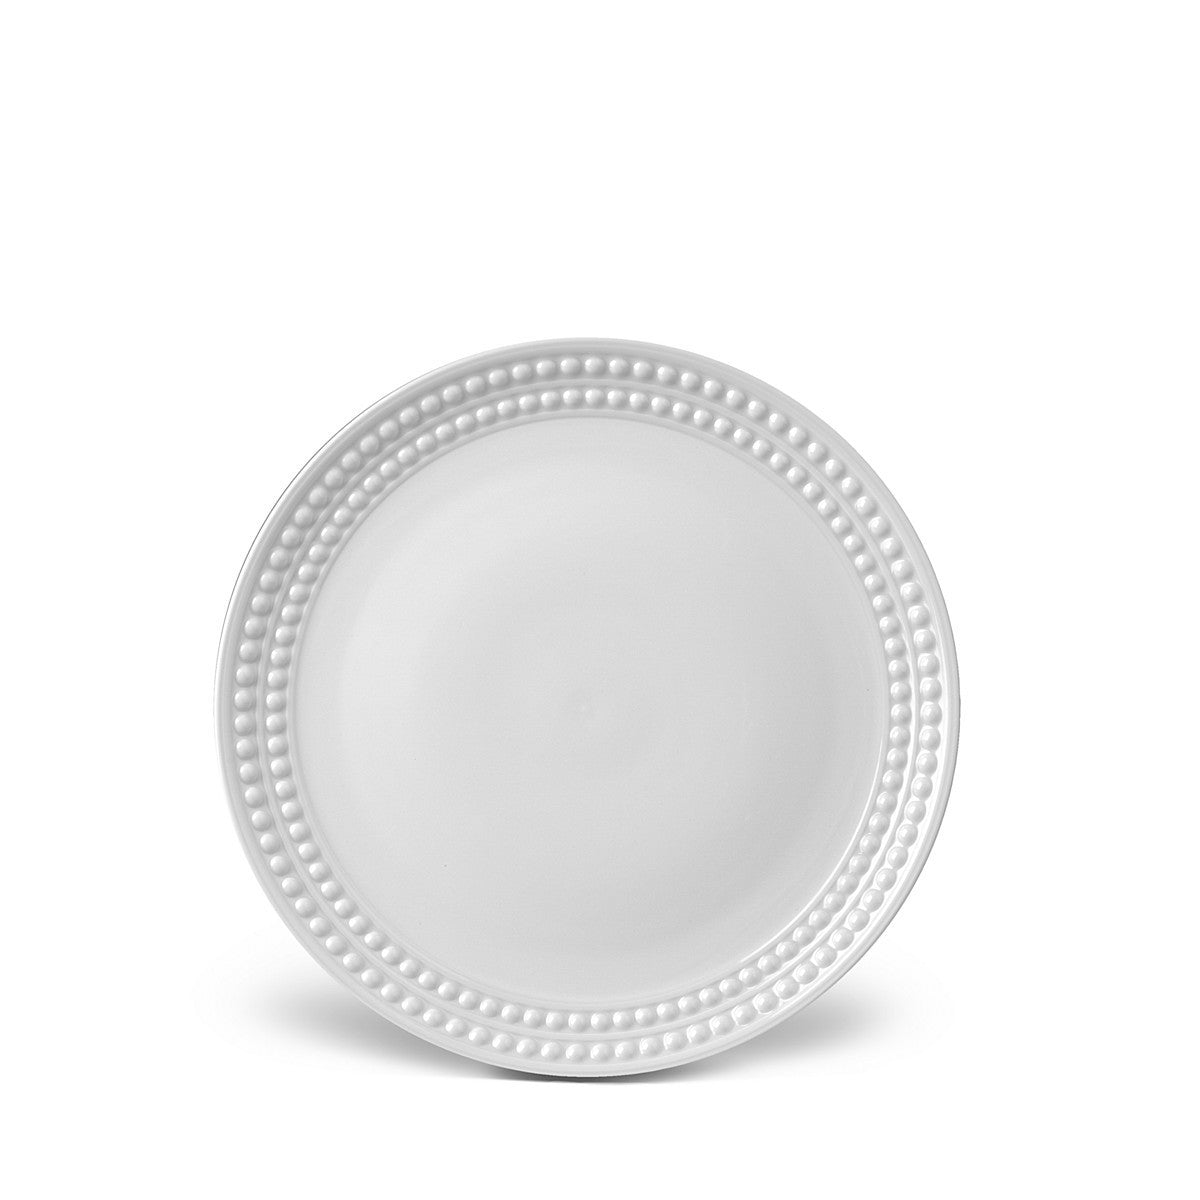 Perlee White Dinner Plate - RSVP Style